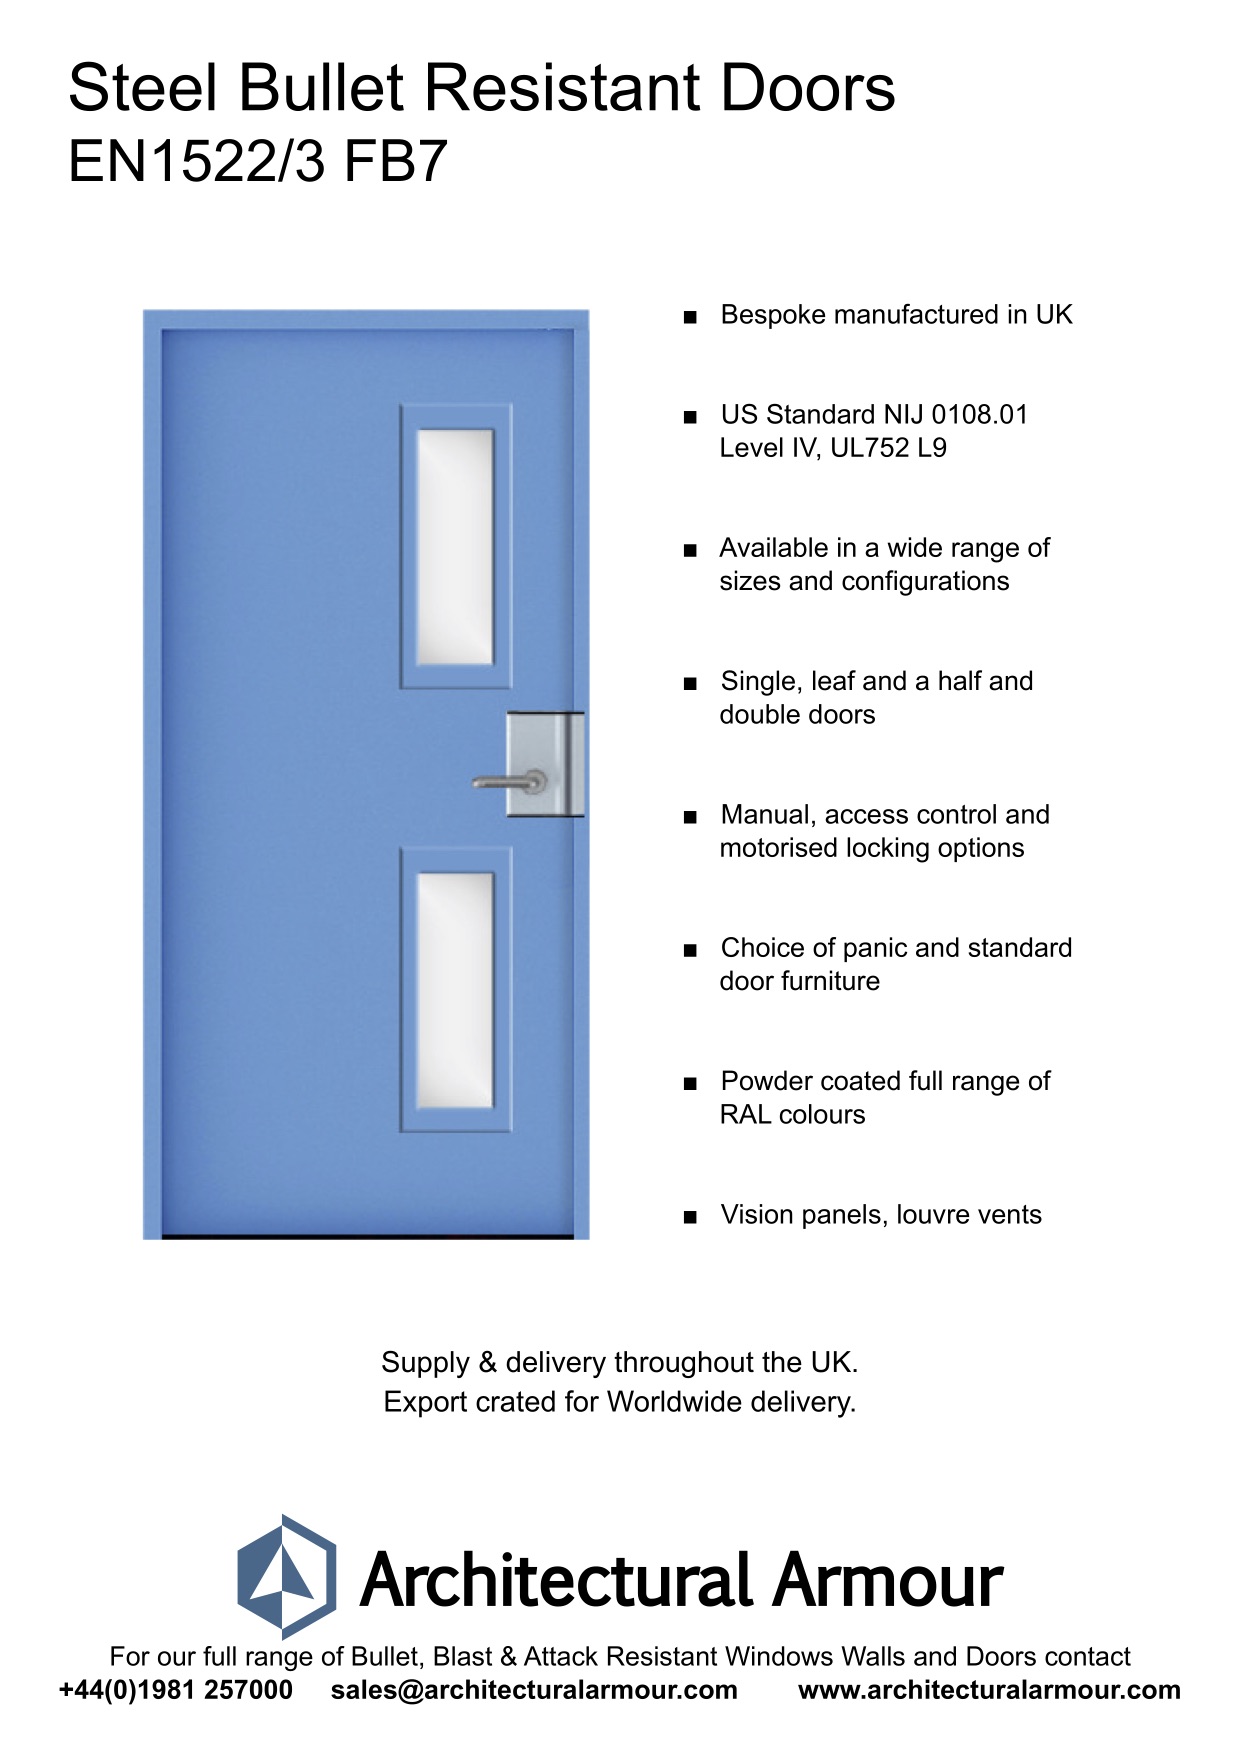 EN1522-3-FB7-Bullet-Resistant-Metal-Security-Door-UK